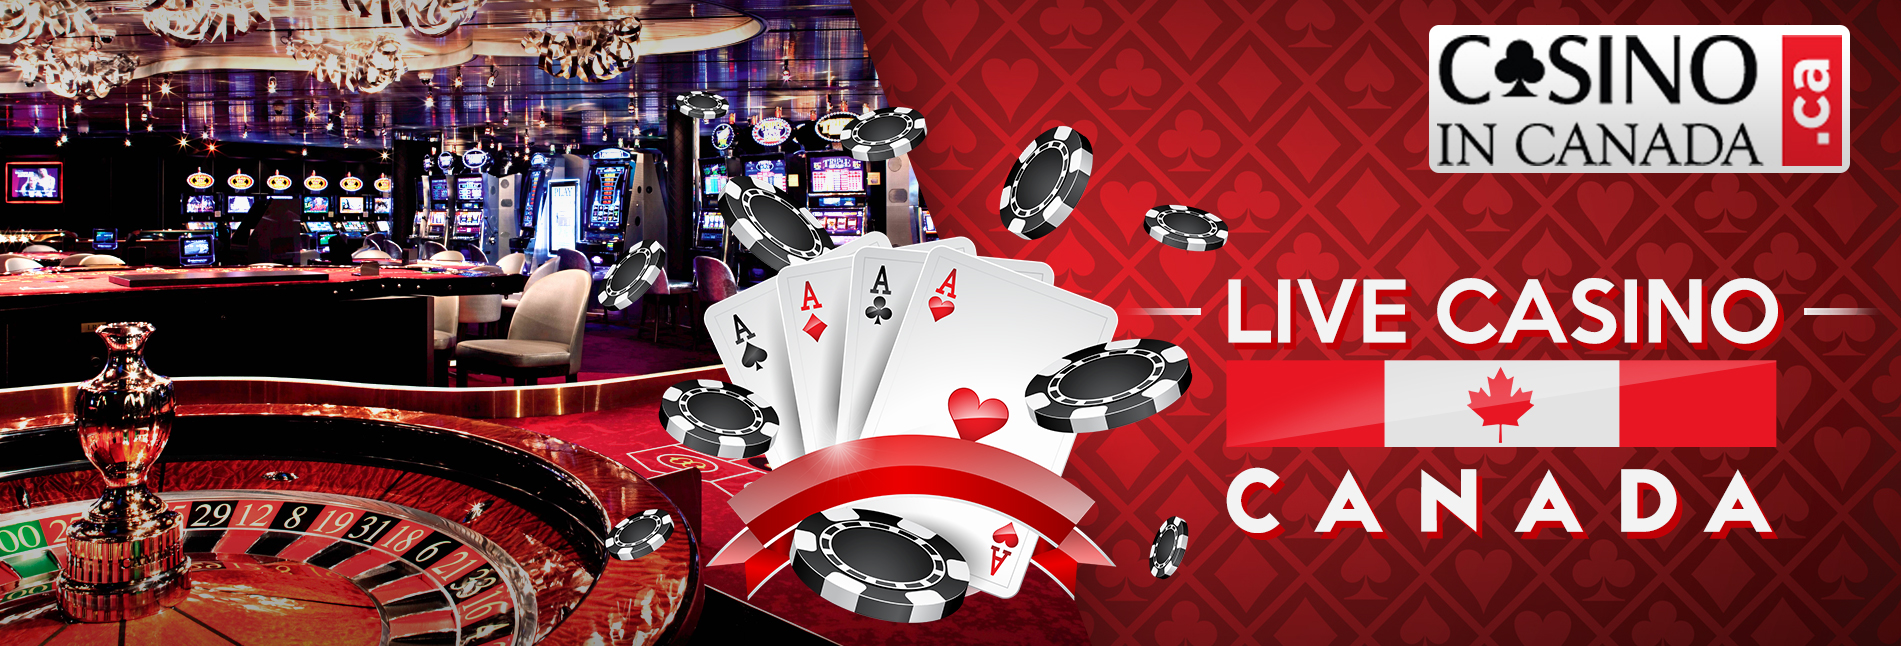 best online casino canada blackjack